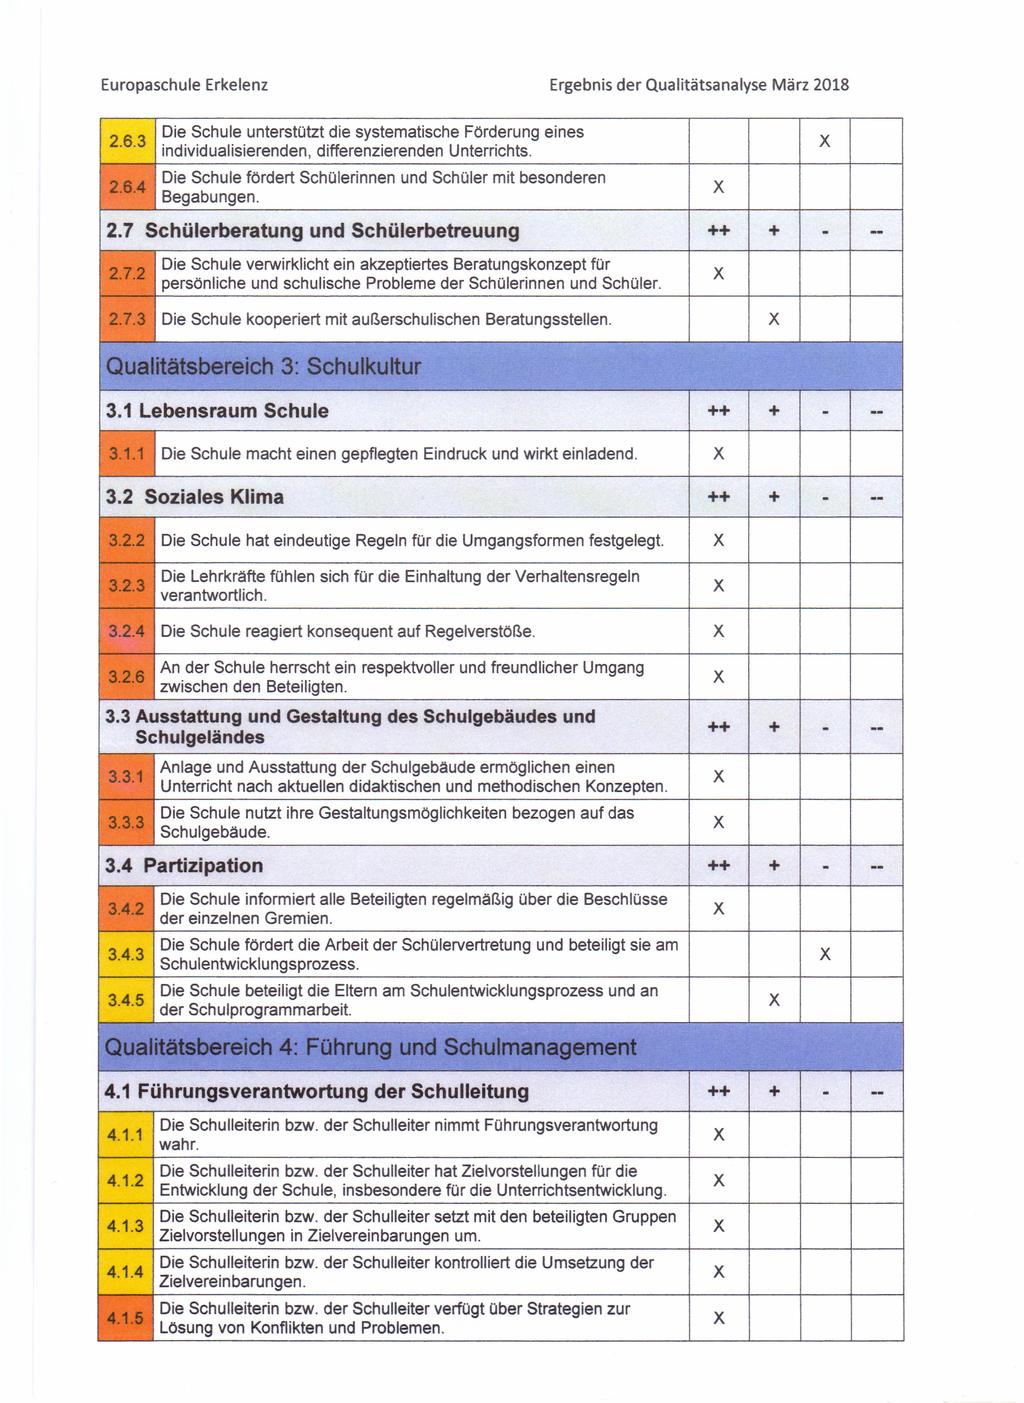 Europaschule Erkelenz Ergebnis der Qualitätsanalyse 2.6.3 Die Schule unterstützt die systematische Förderung eines individualisierenden, differenzierenden Unterrichts. 2.6.4 Die Schule fördert Schülerinnen und Schüler mit besonderen Begabungen.